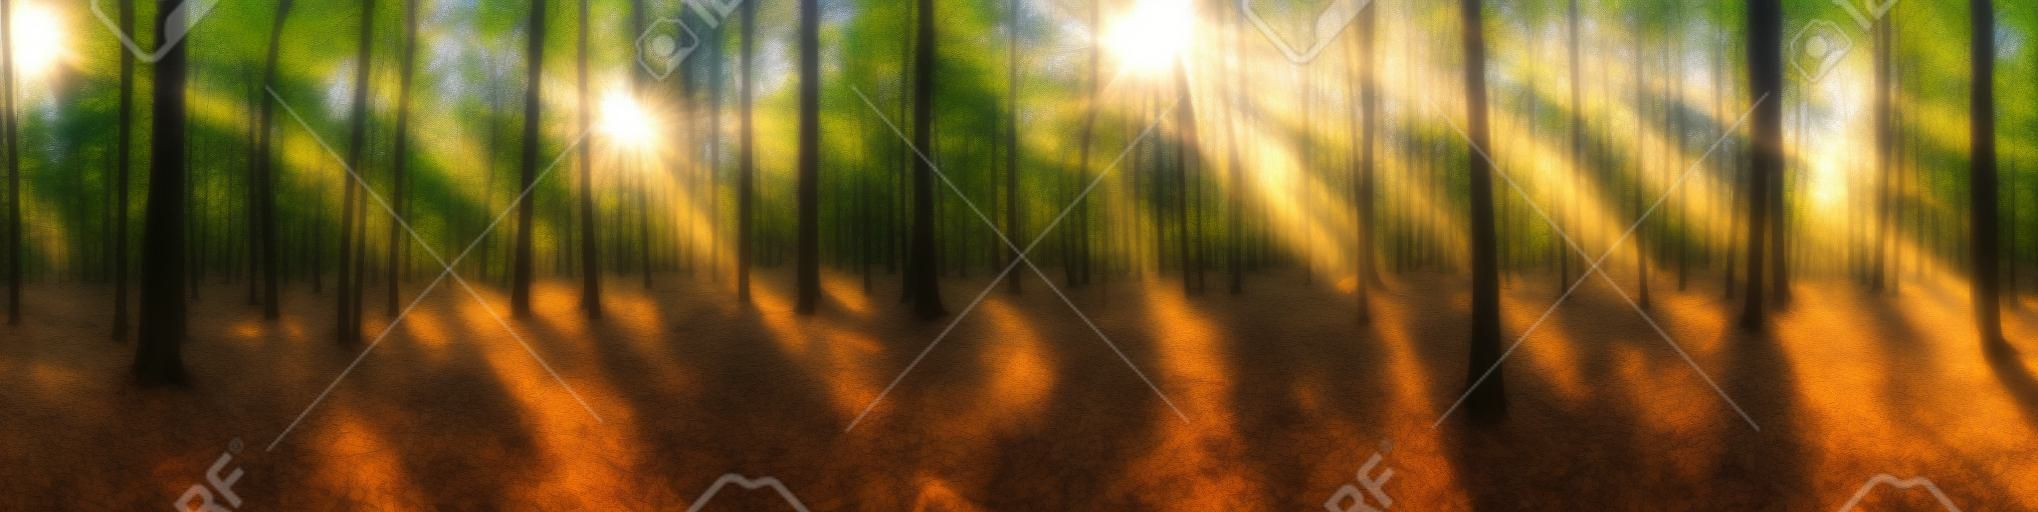 Piękna panorama lasu z jasnym słońcem prześwitującym przez drzewa